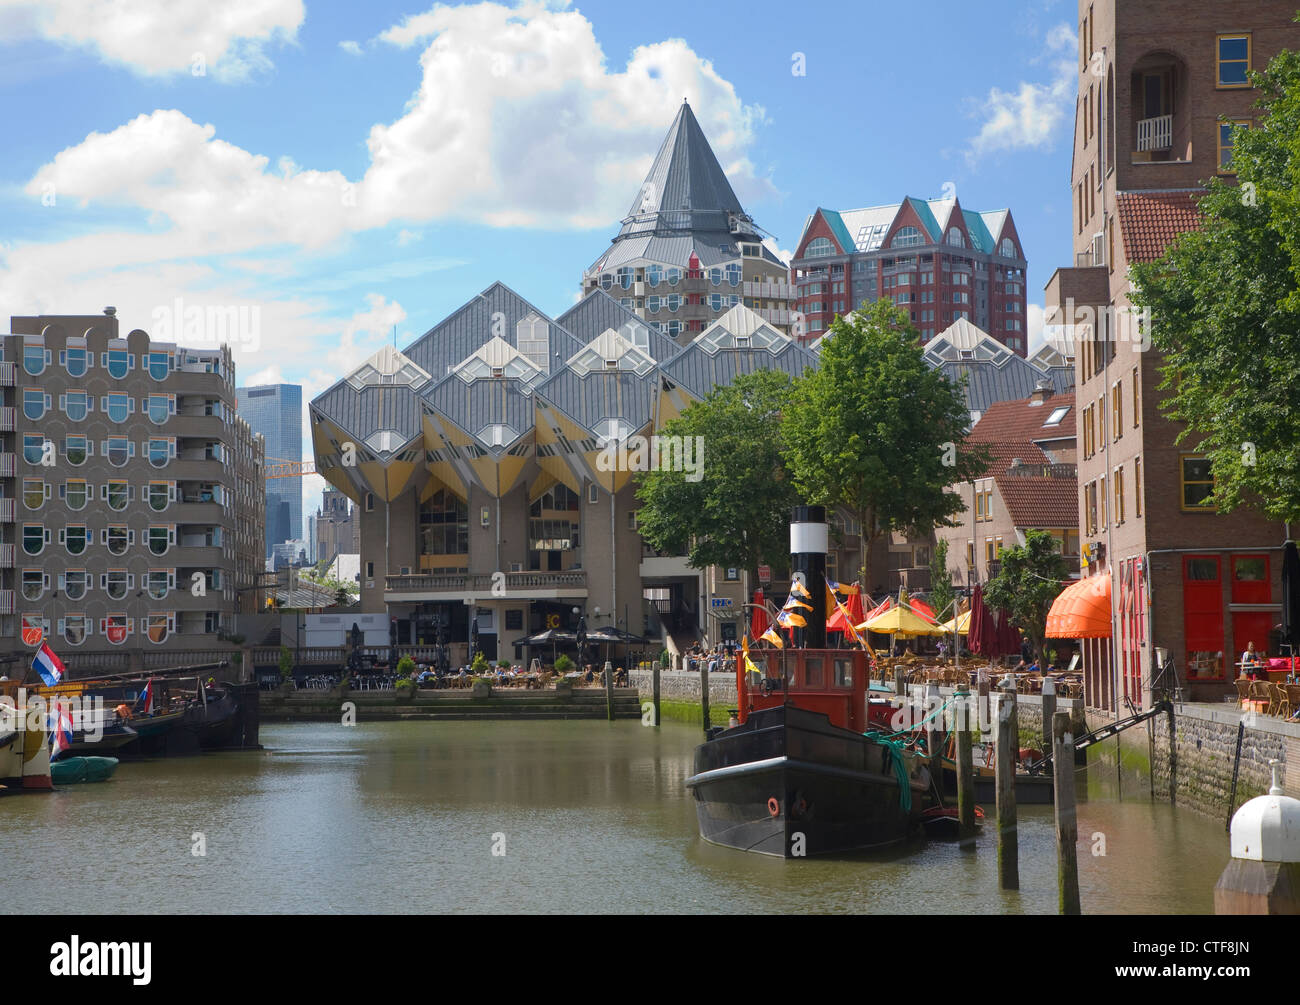 Imbarcazioni storiche e ristoranti sul lungomare, Oude Haven, Rotterdam, Paesi Bassi Foto Stock